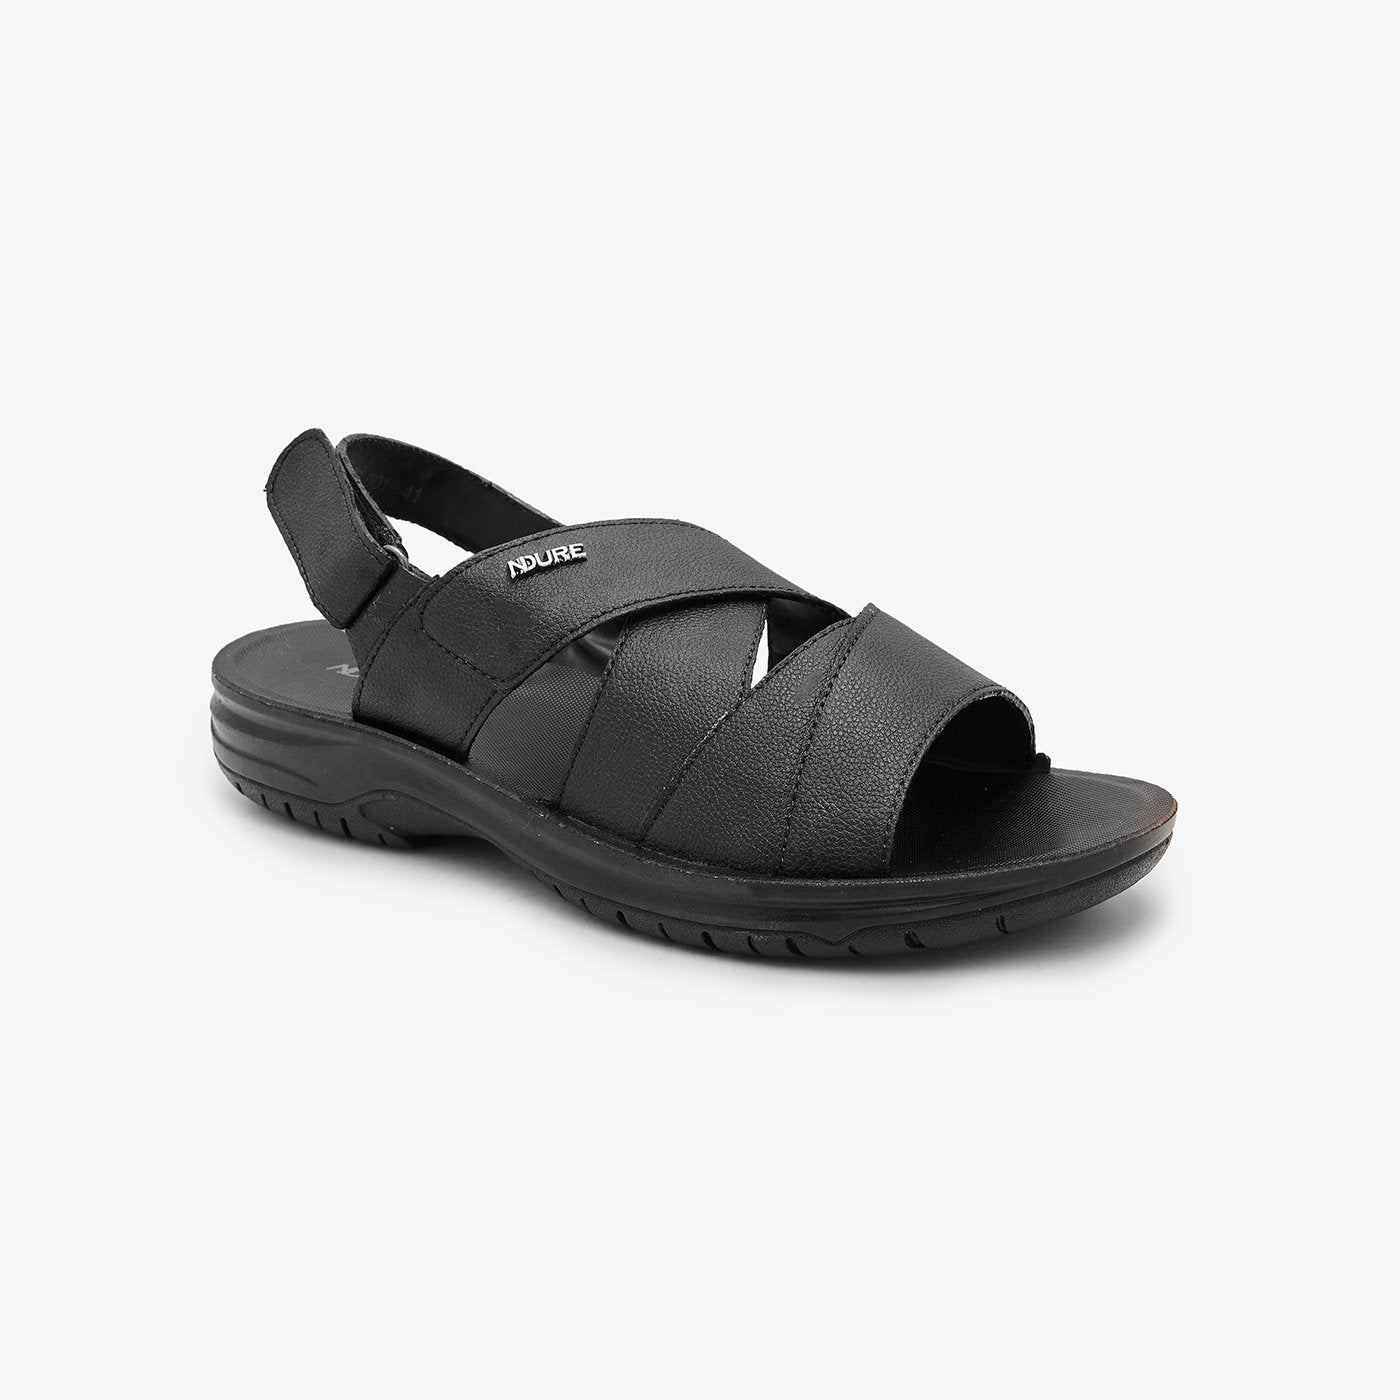 men sandals price in Pakistan